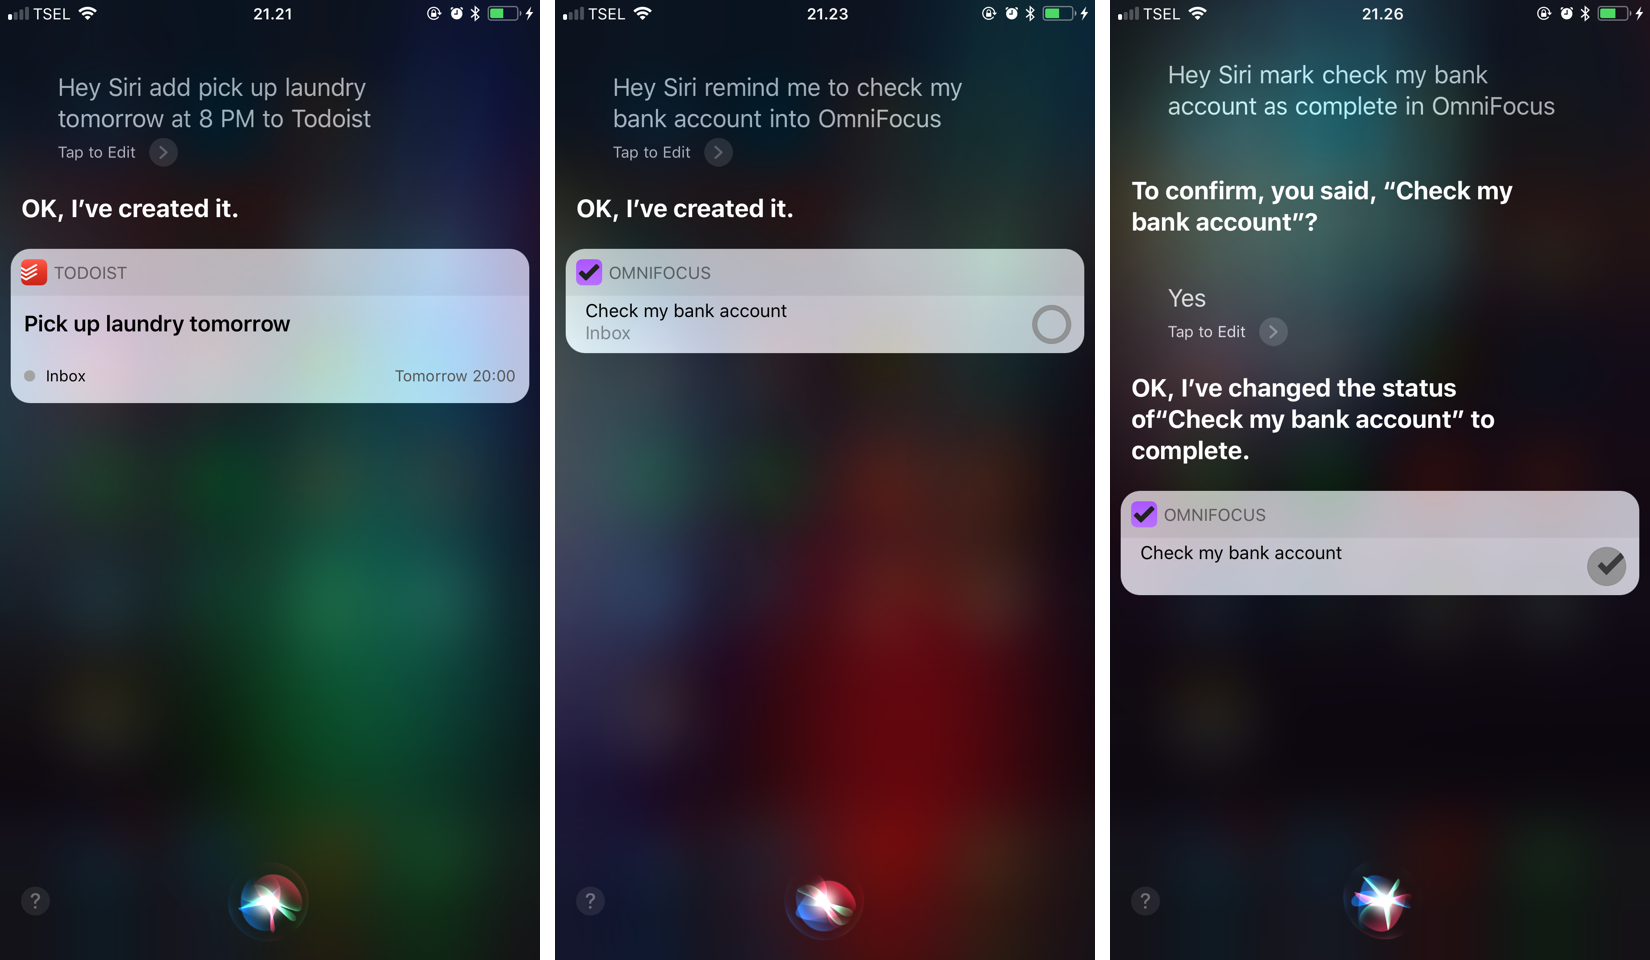 iOS 11 Review: Semakin personal dengan teknologi AI dan fitur pendukung produktivitas